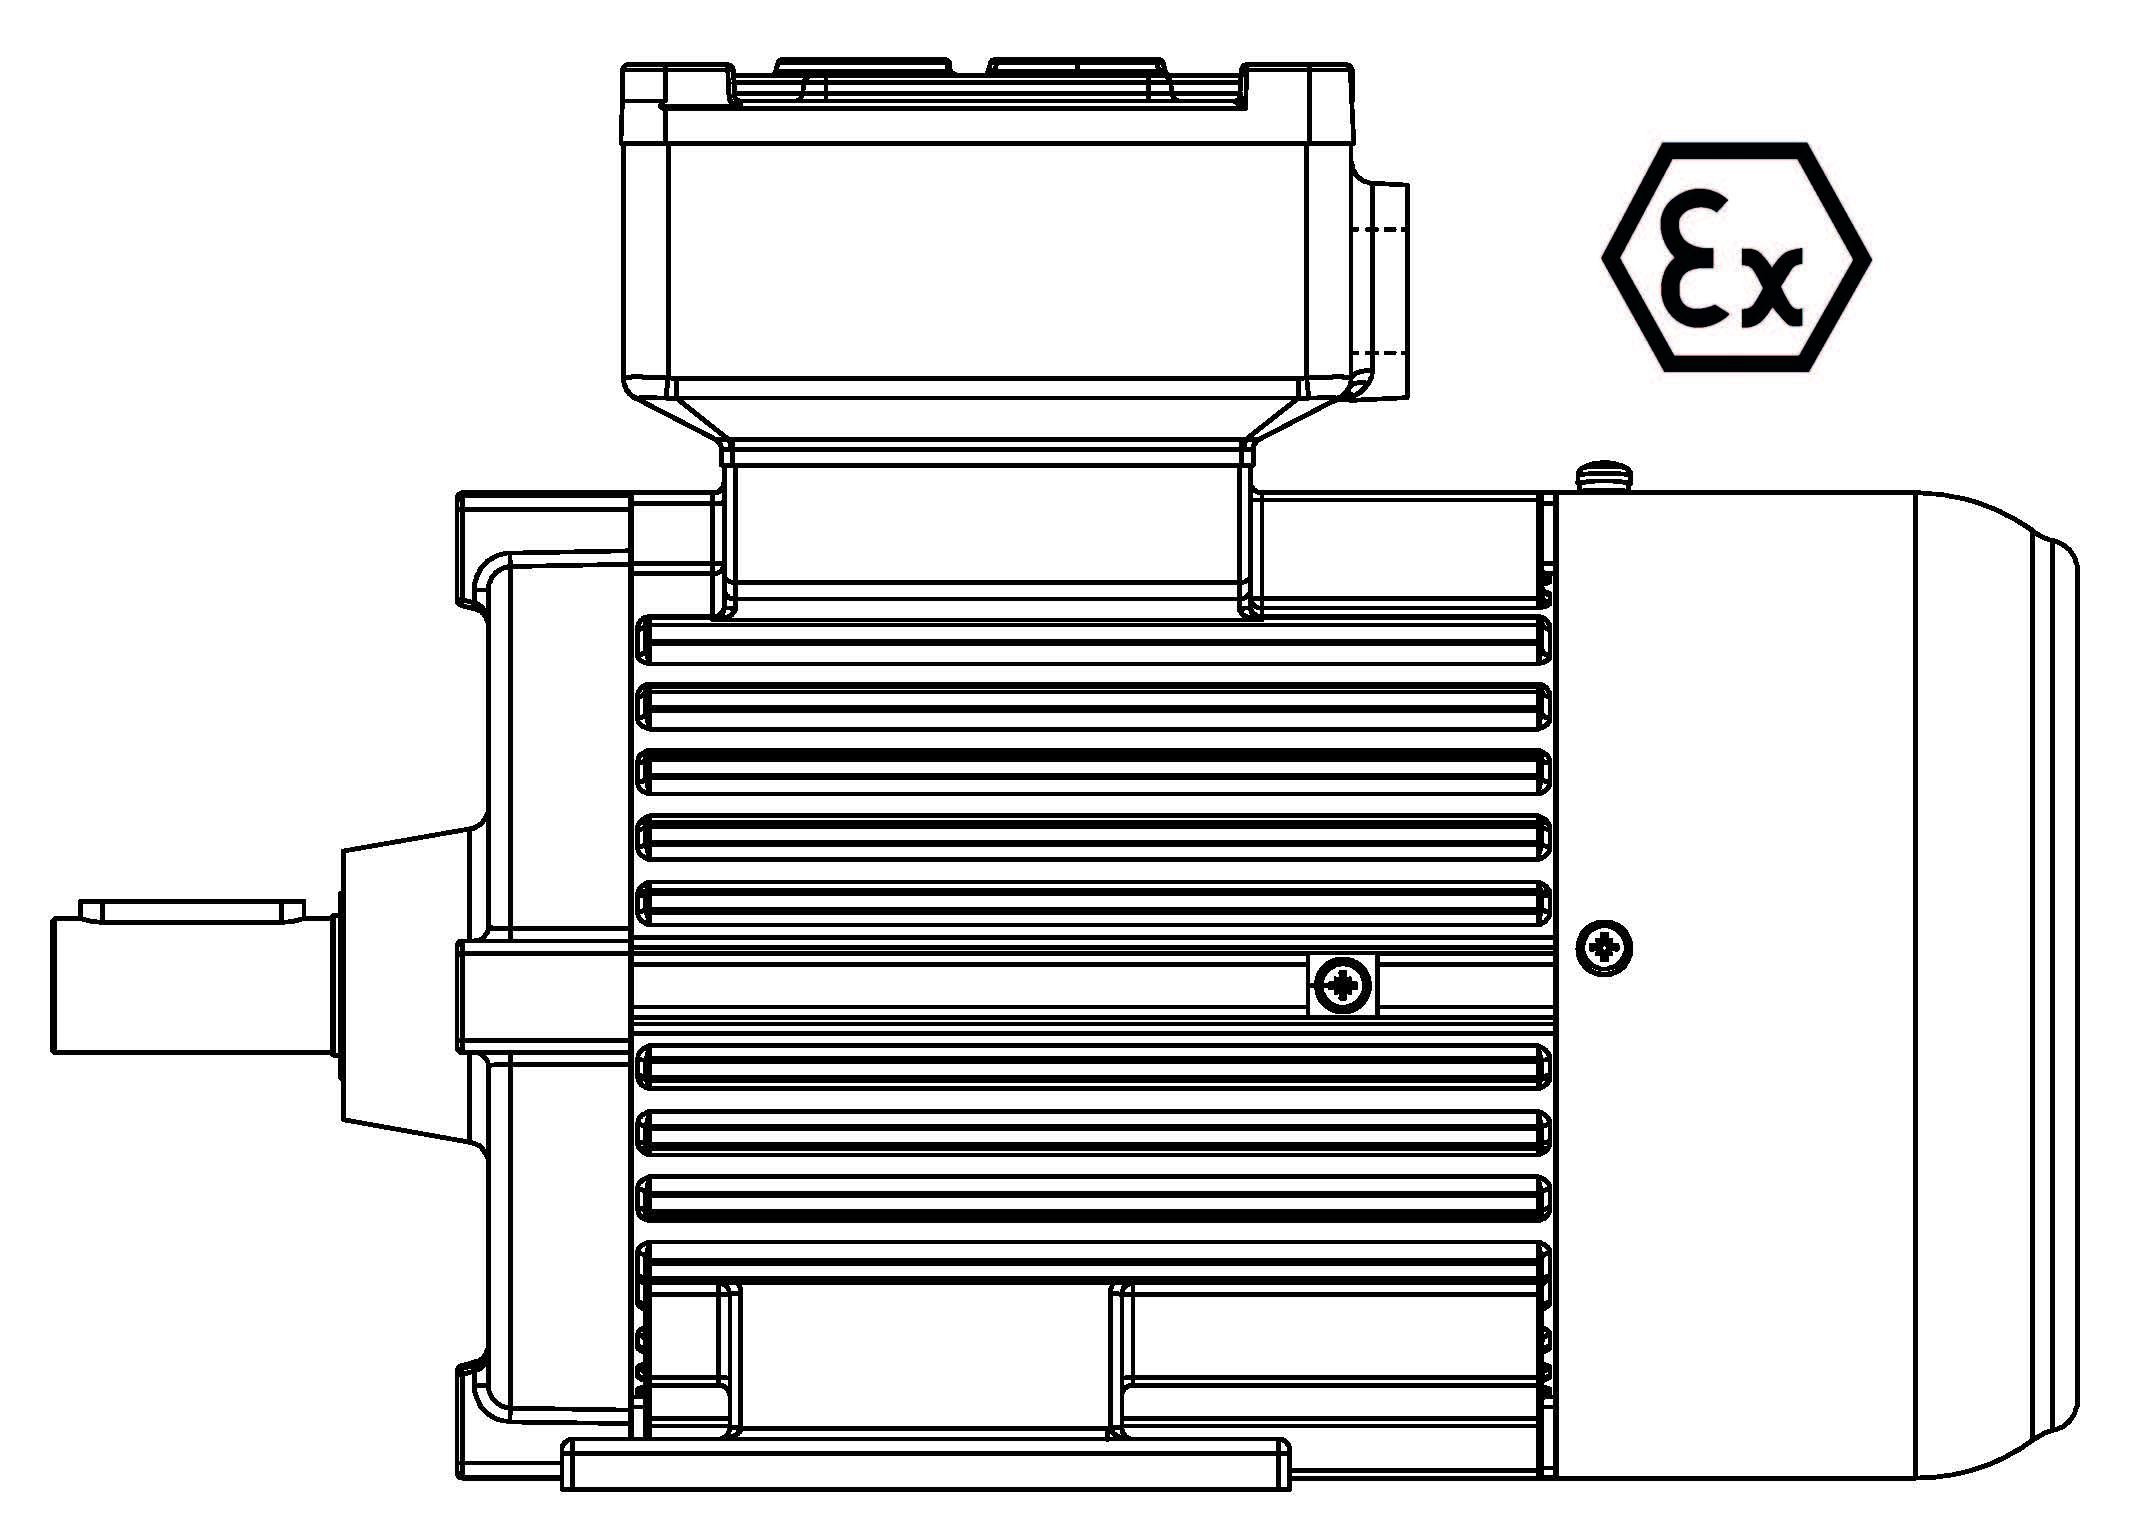 ATEX-200-4P 30 B3 400/3/50 Ex d IIB Эл.двигатель B3, разм. 200, 1450 об/мин, 30 кВт, 400 В, 3ф, 50 Гц